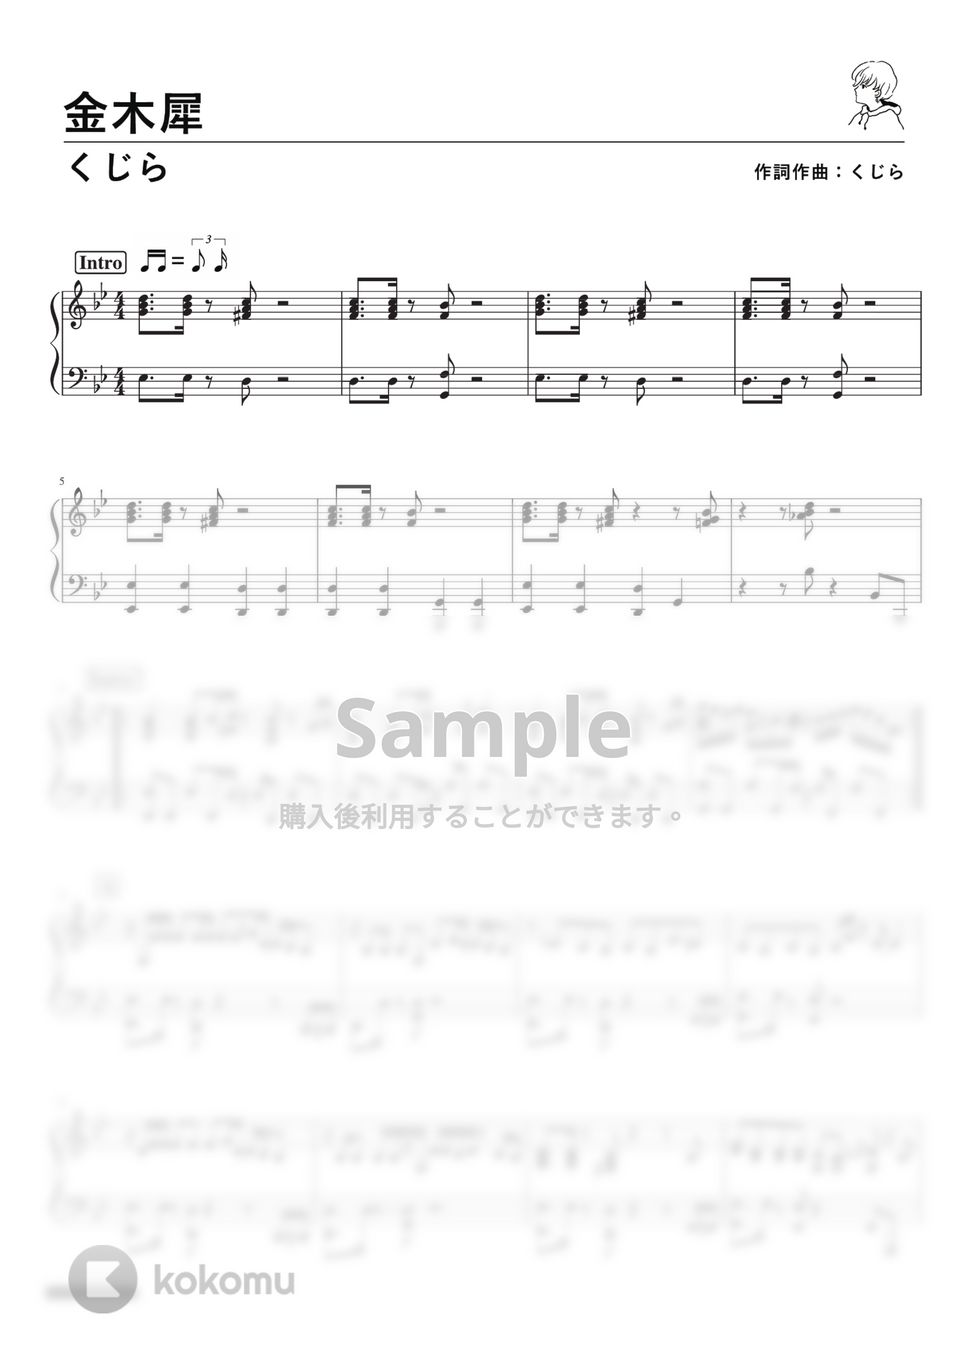 くじら - 金木犀 (Piano Solo) by 深根 / Fukane